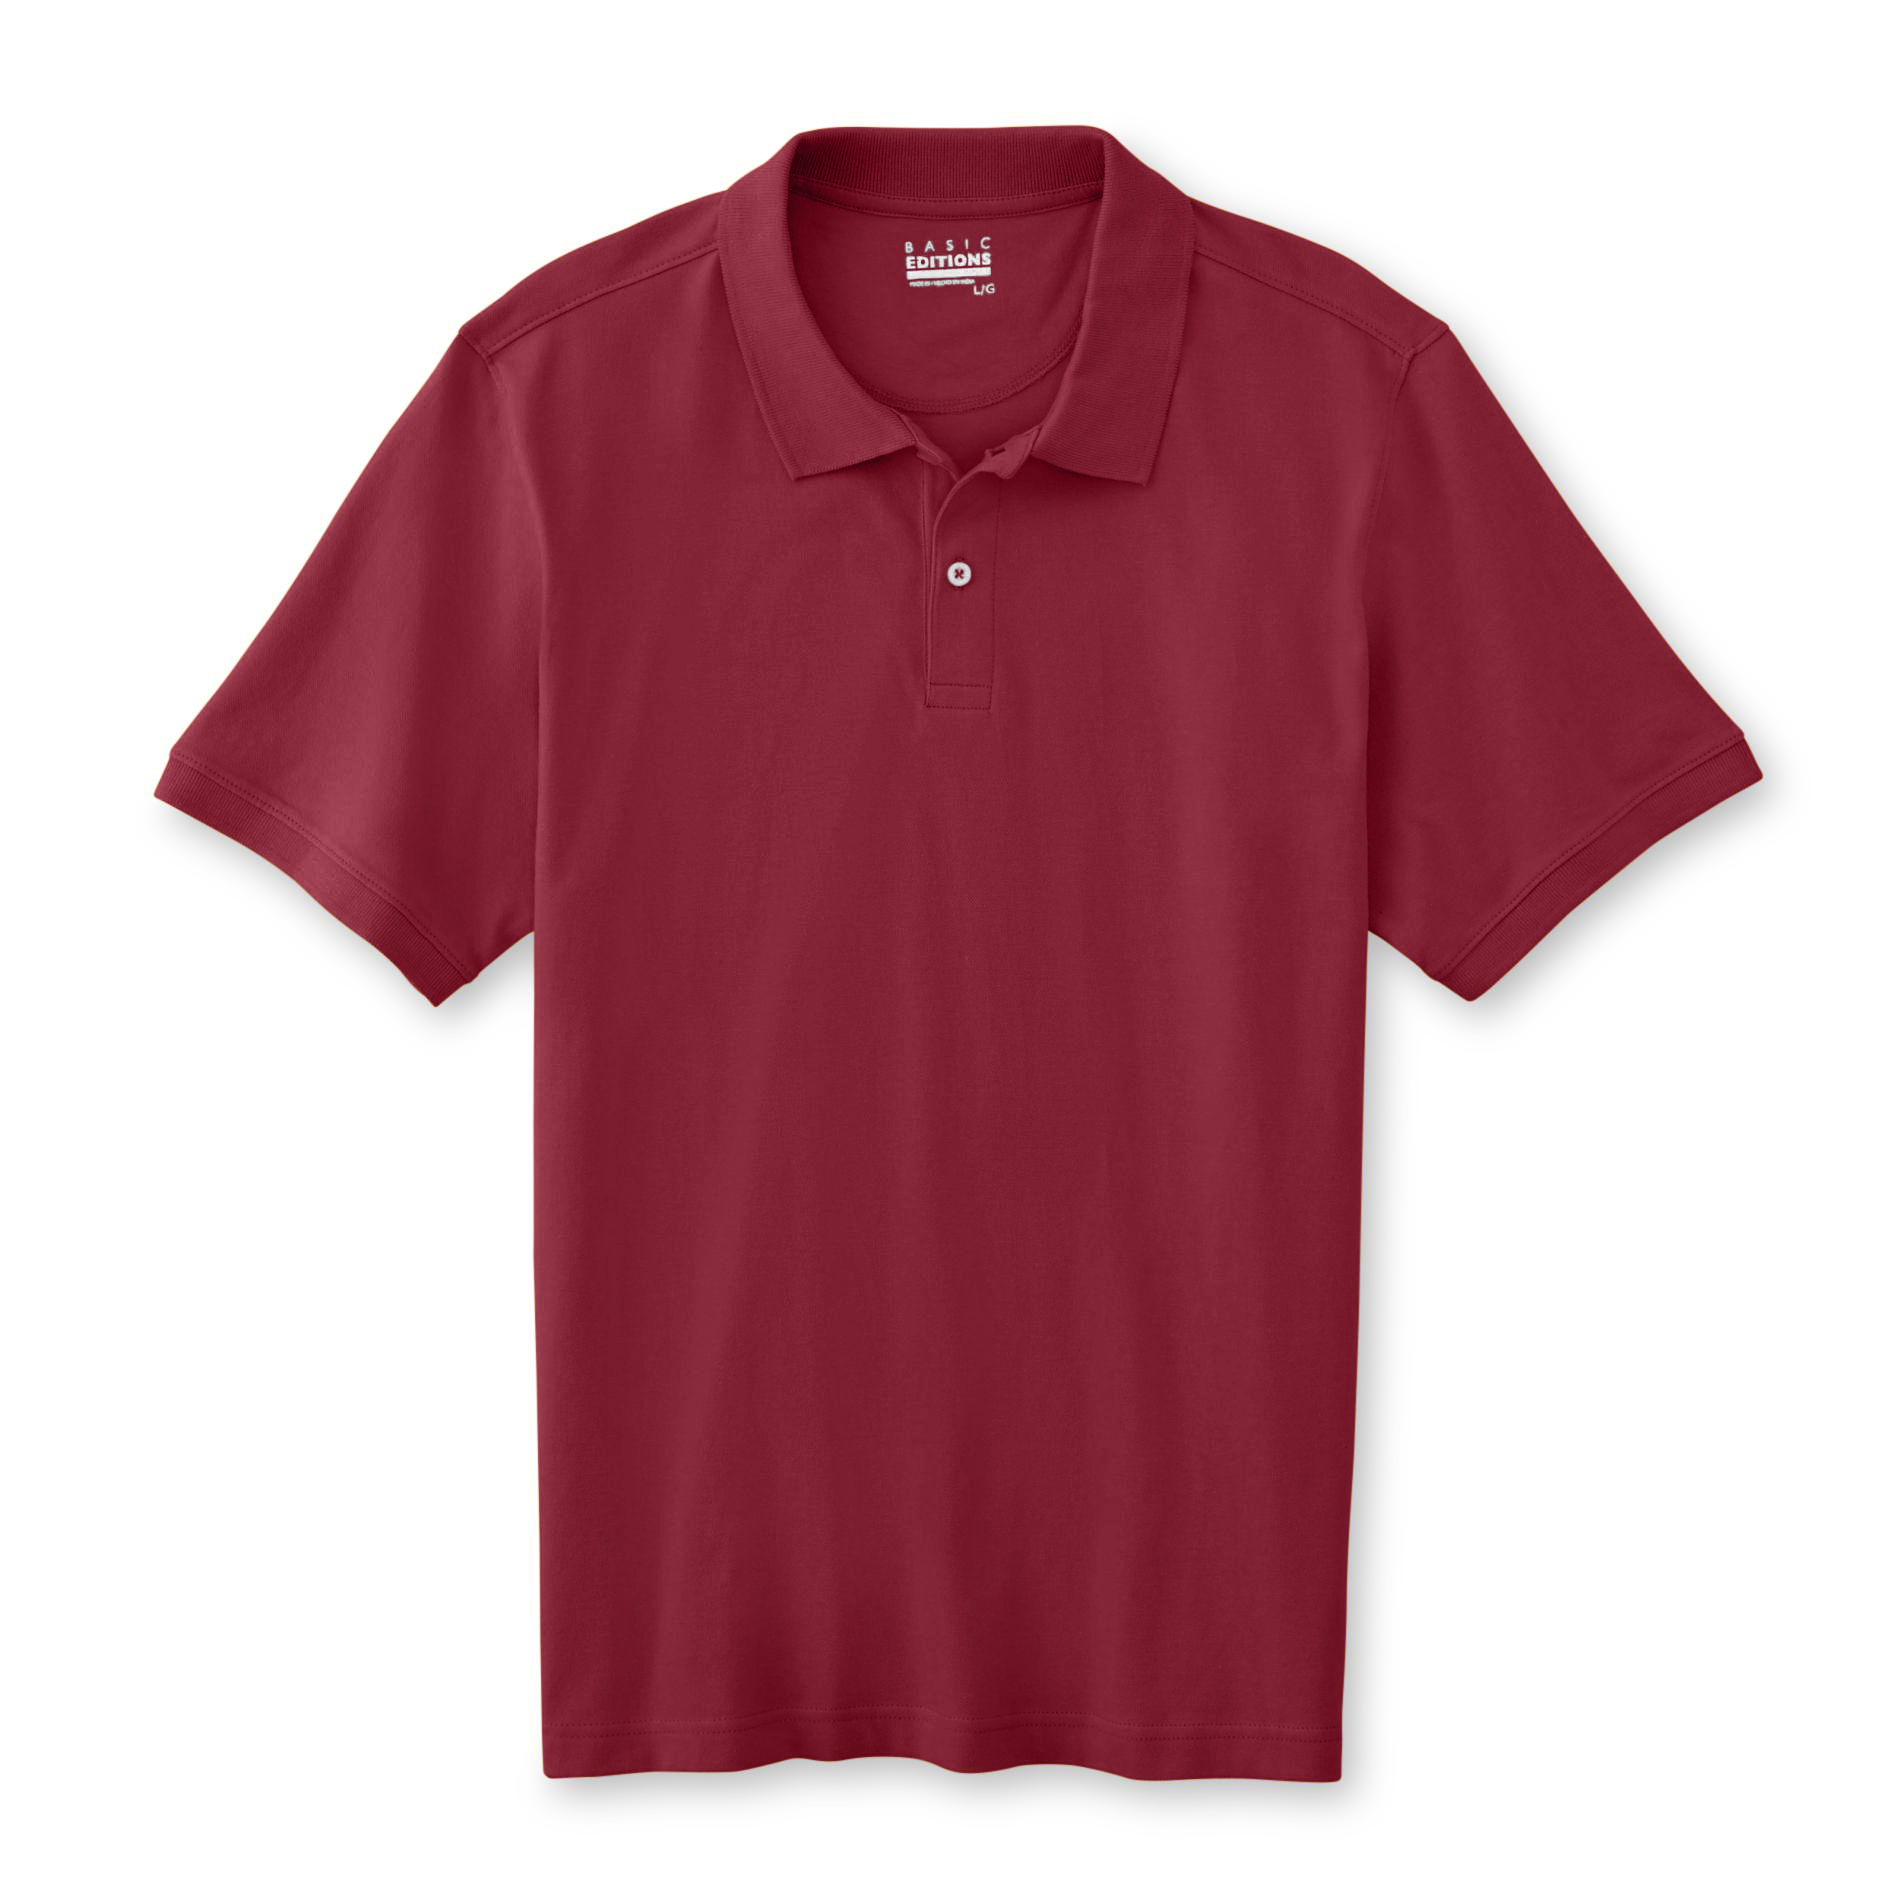 Basic Editions Men's Pique Polo Shirt